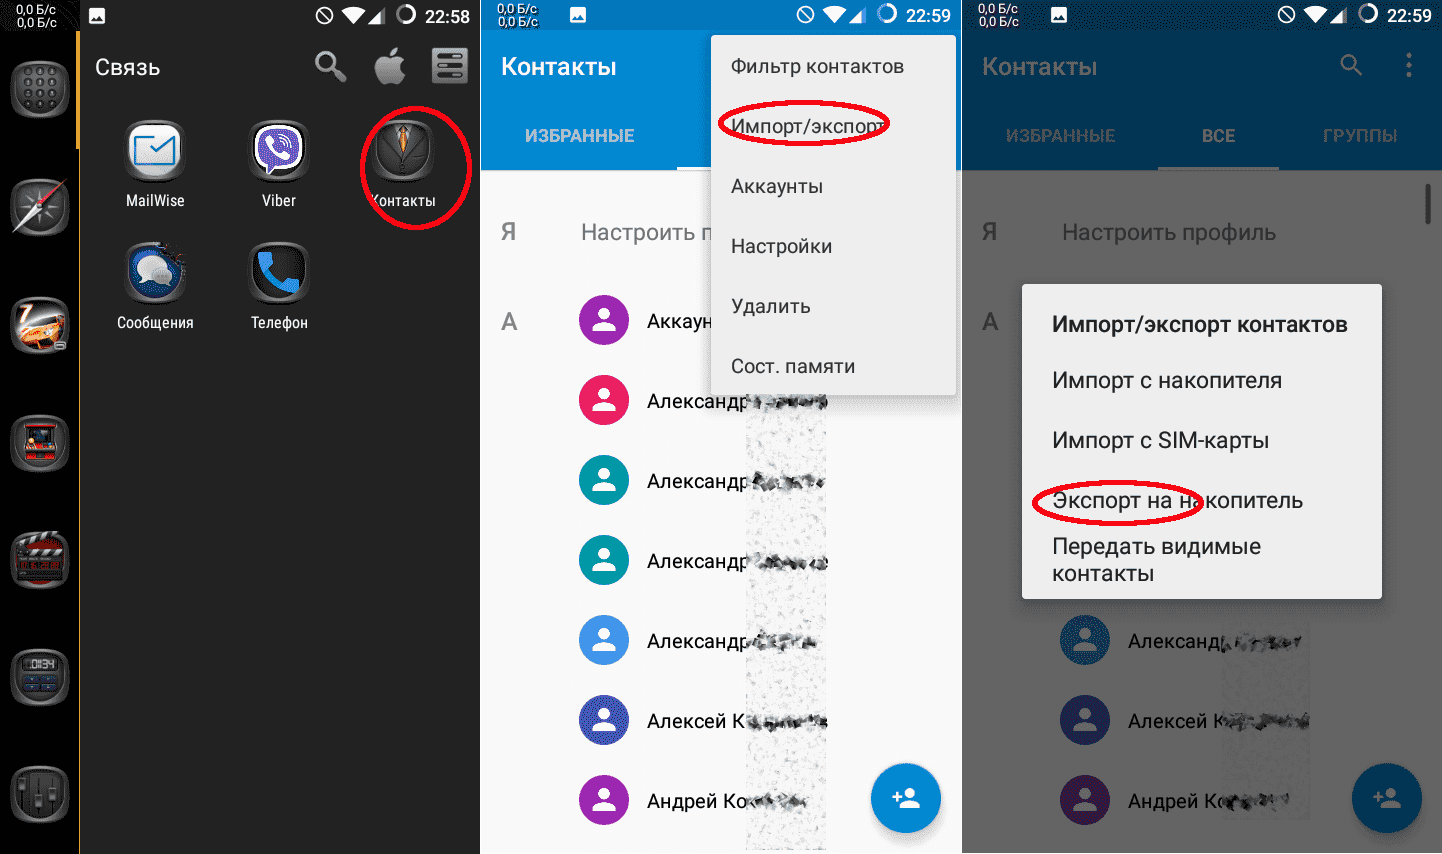 Как удалить контакт из телеграмма на телефоне навсегда на андроид бесплатно на русском языке андроид фото 41